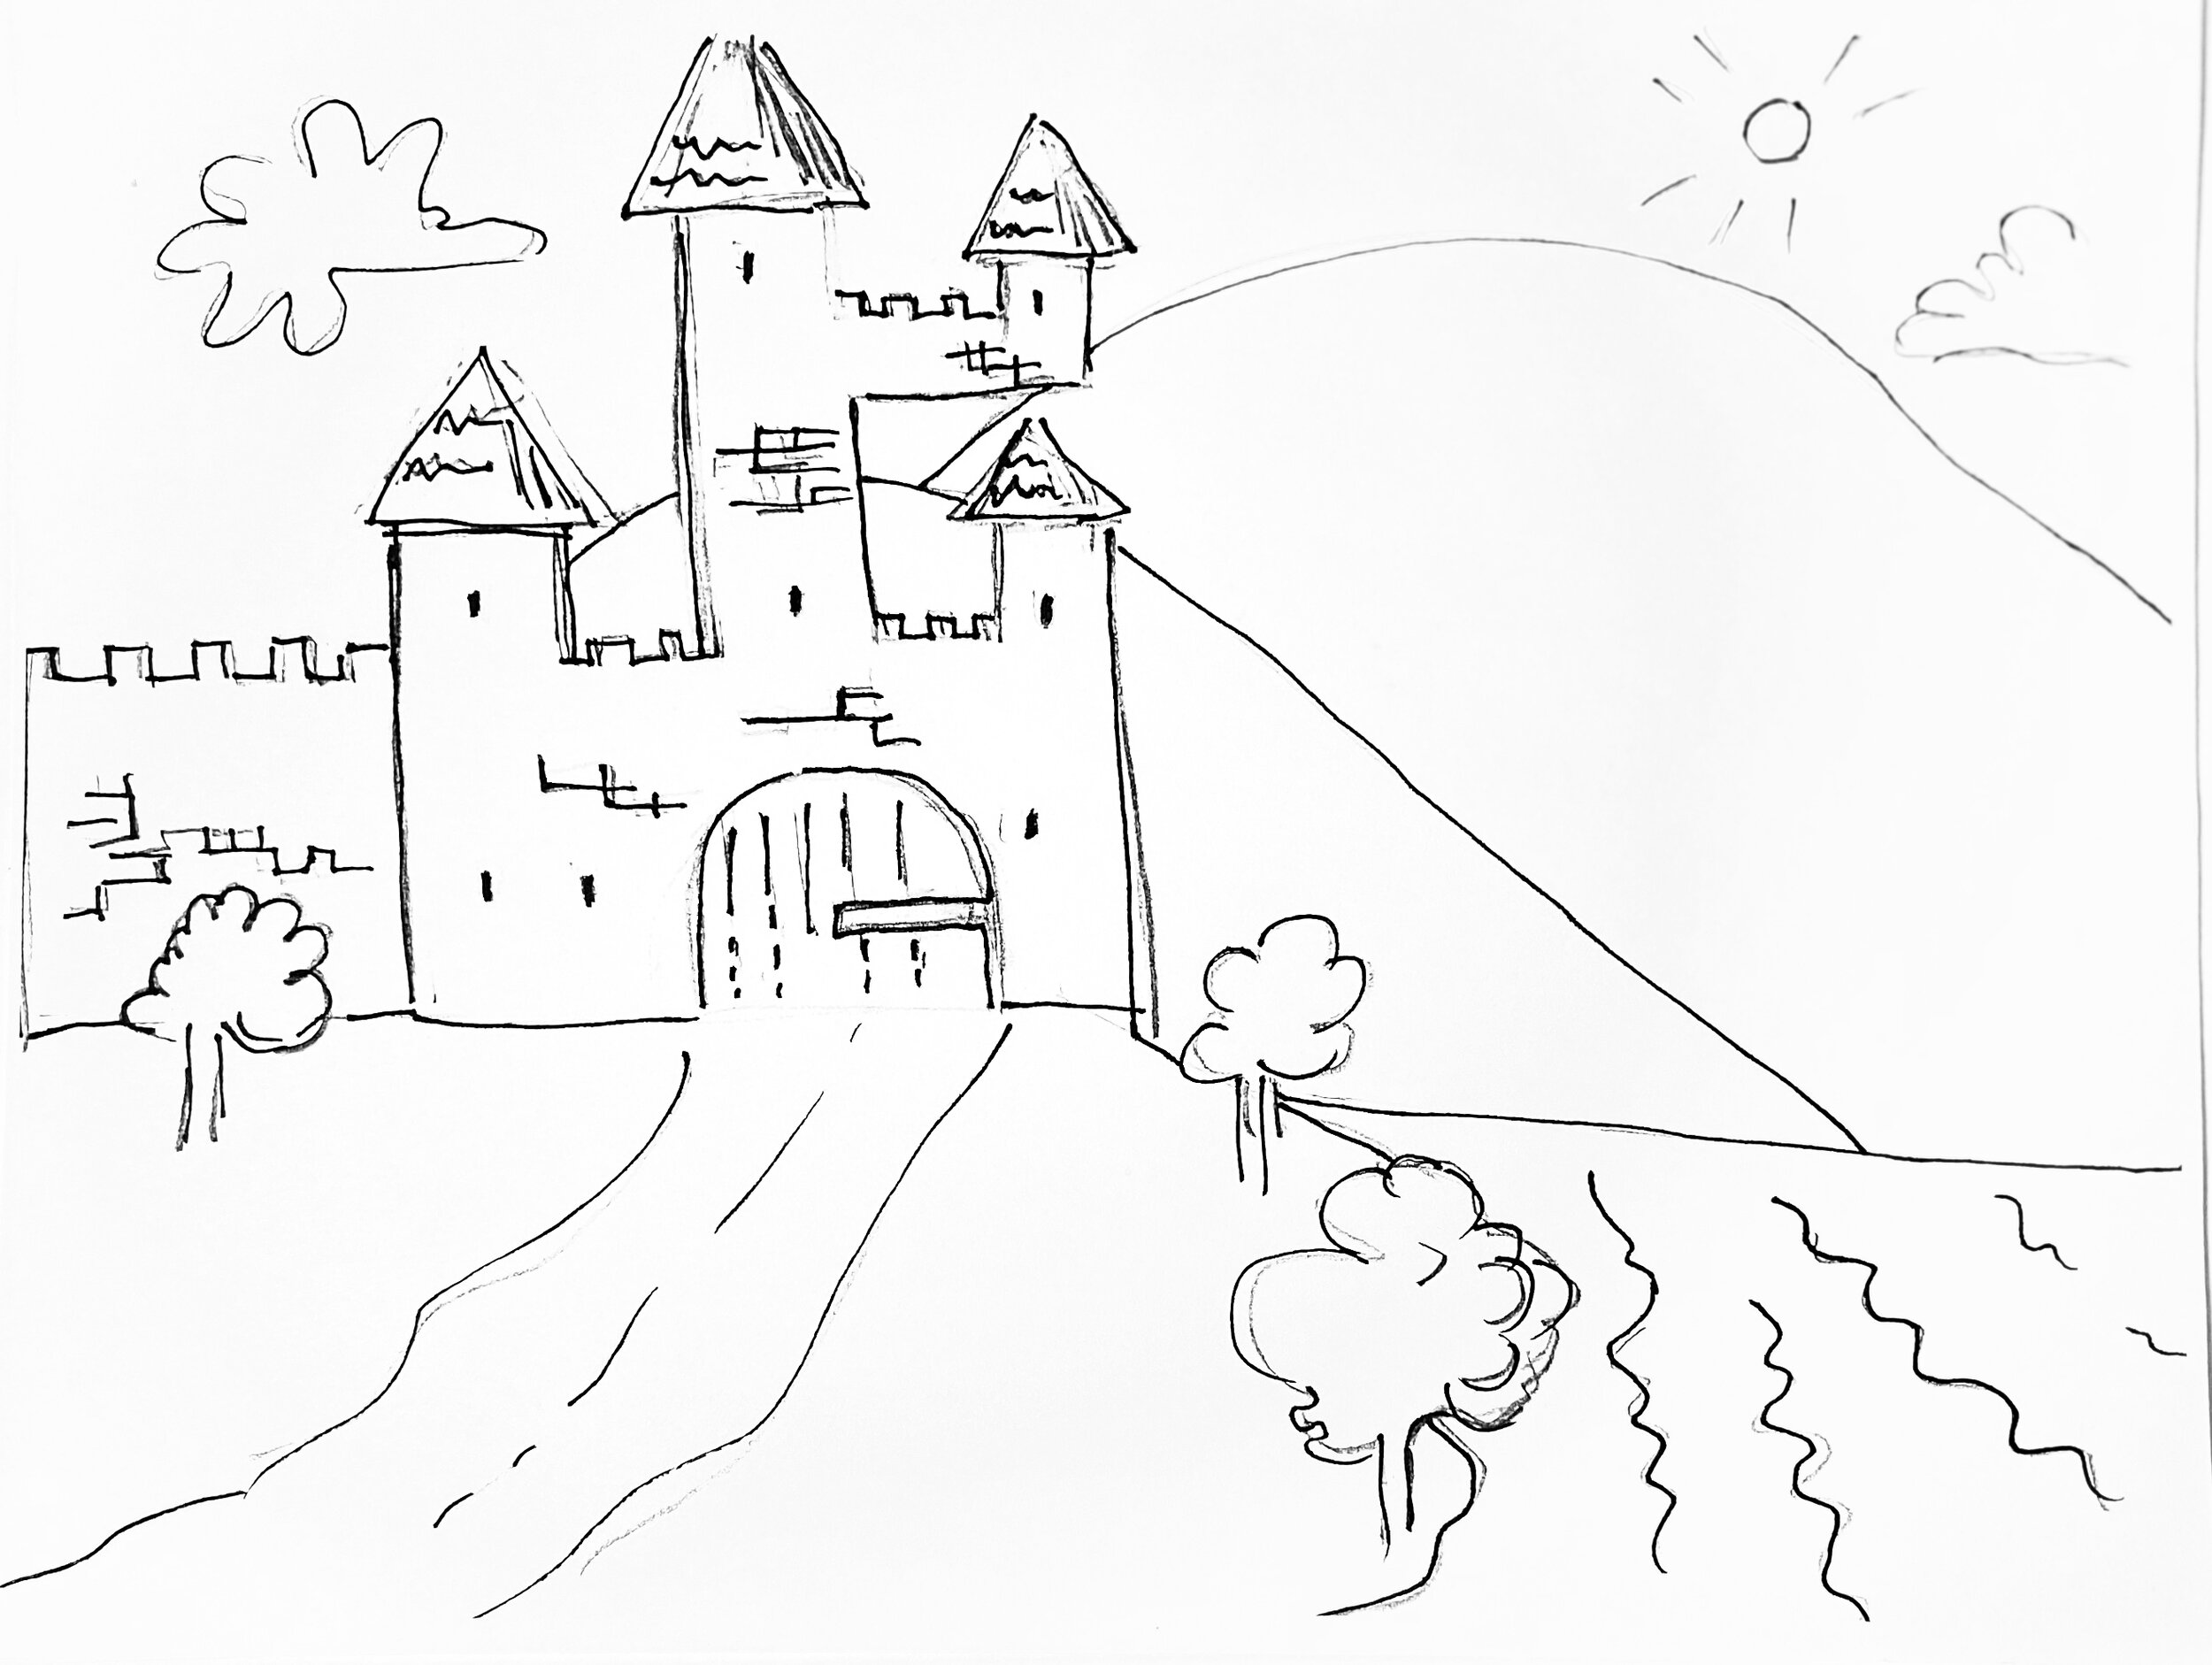 Castle on a hillside.